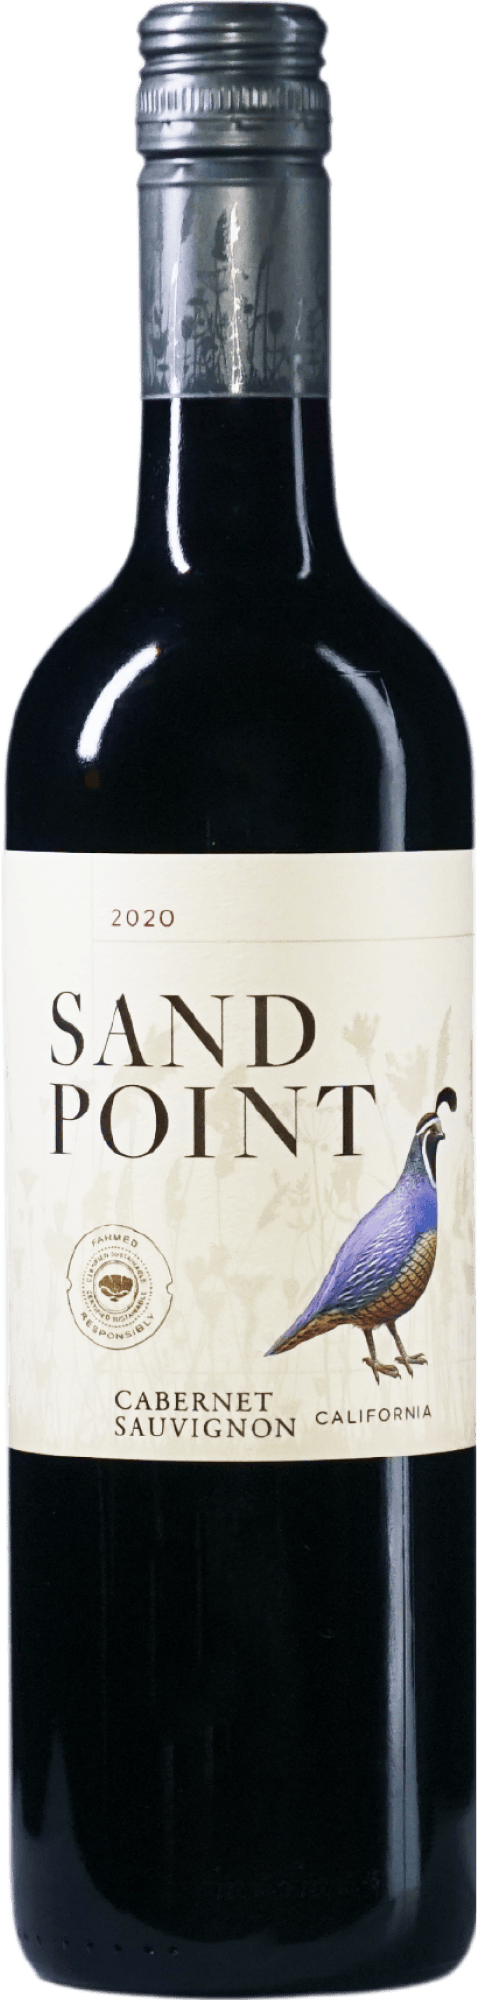 Sand Point Cabernet Sauvignon